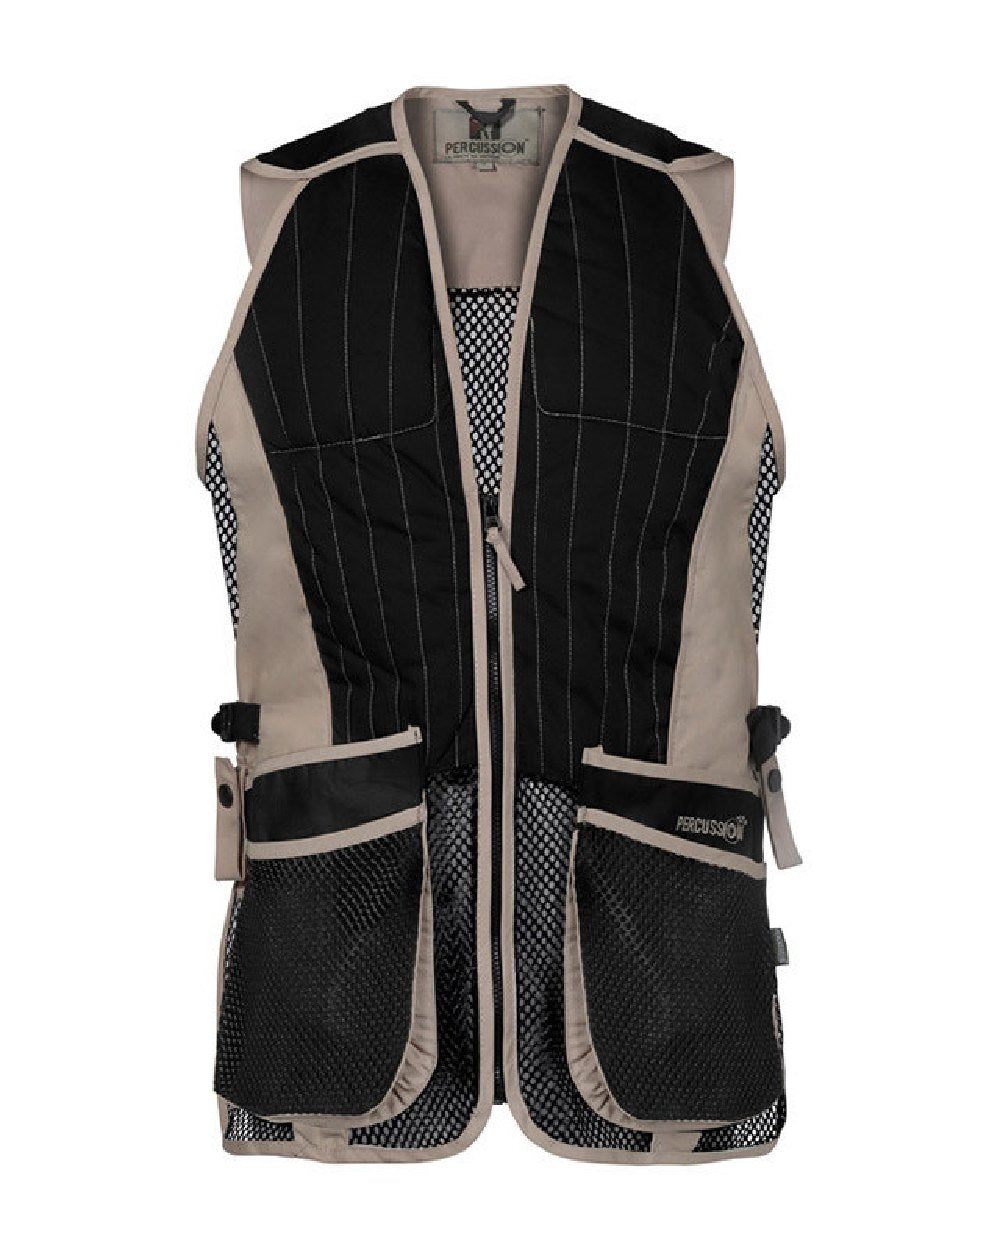 Percussion Skeet Vest in Black/Beige 